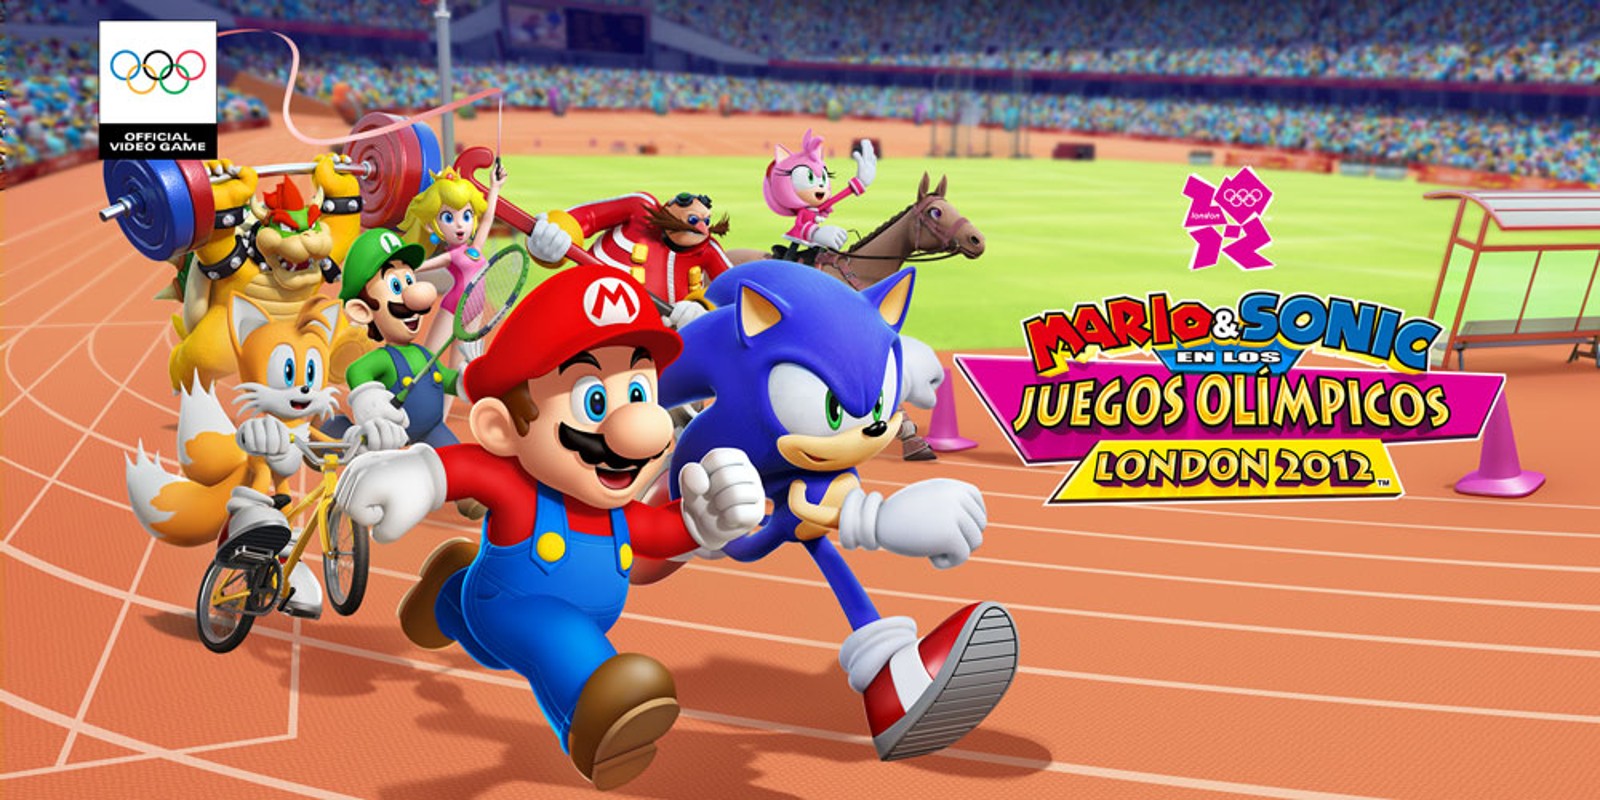 Mario & Sonic en los Juegos Olímpicos - London 2012™